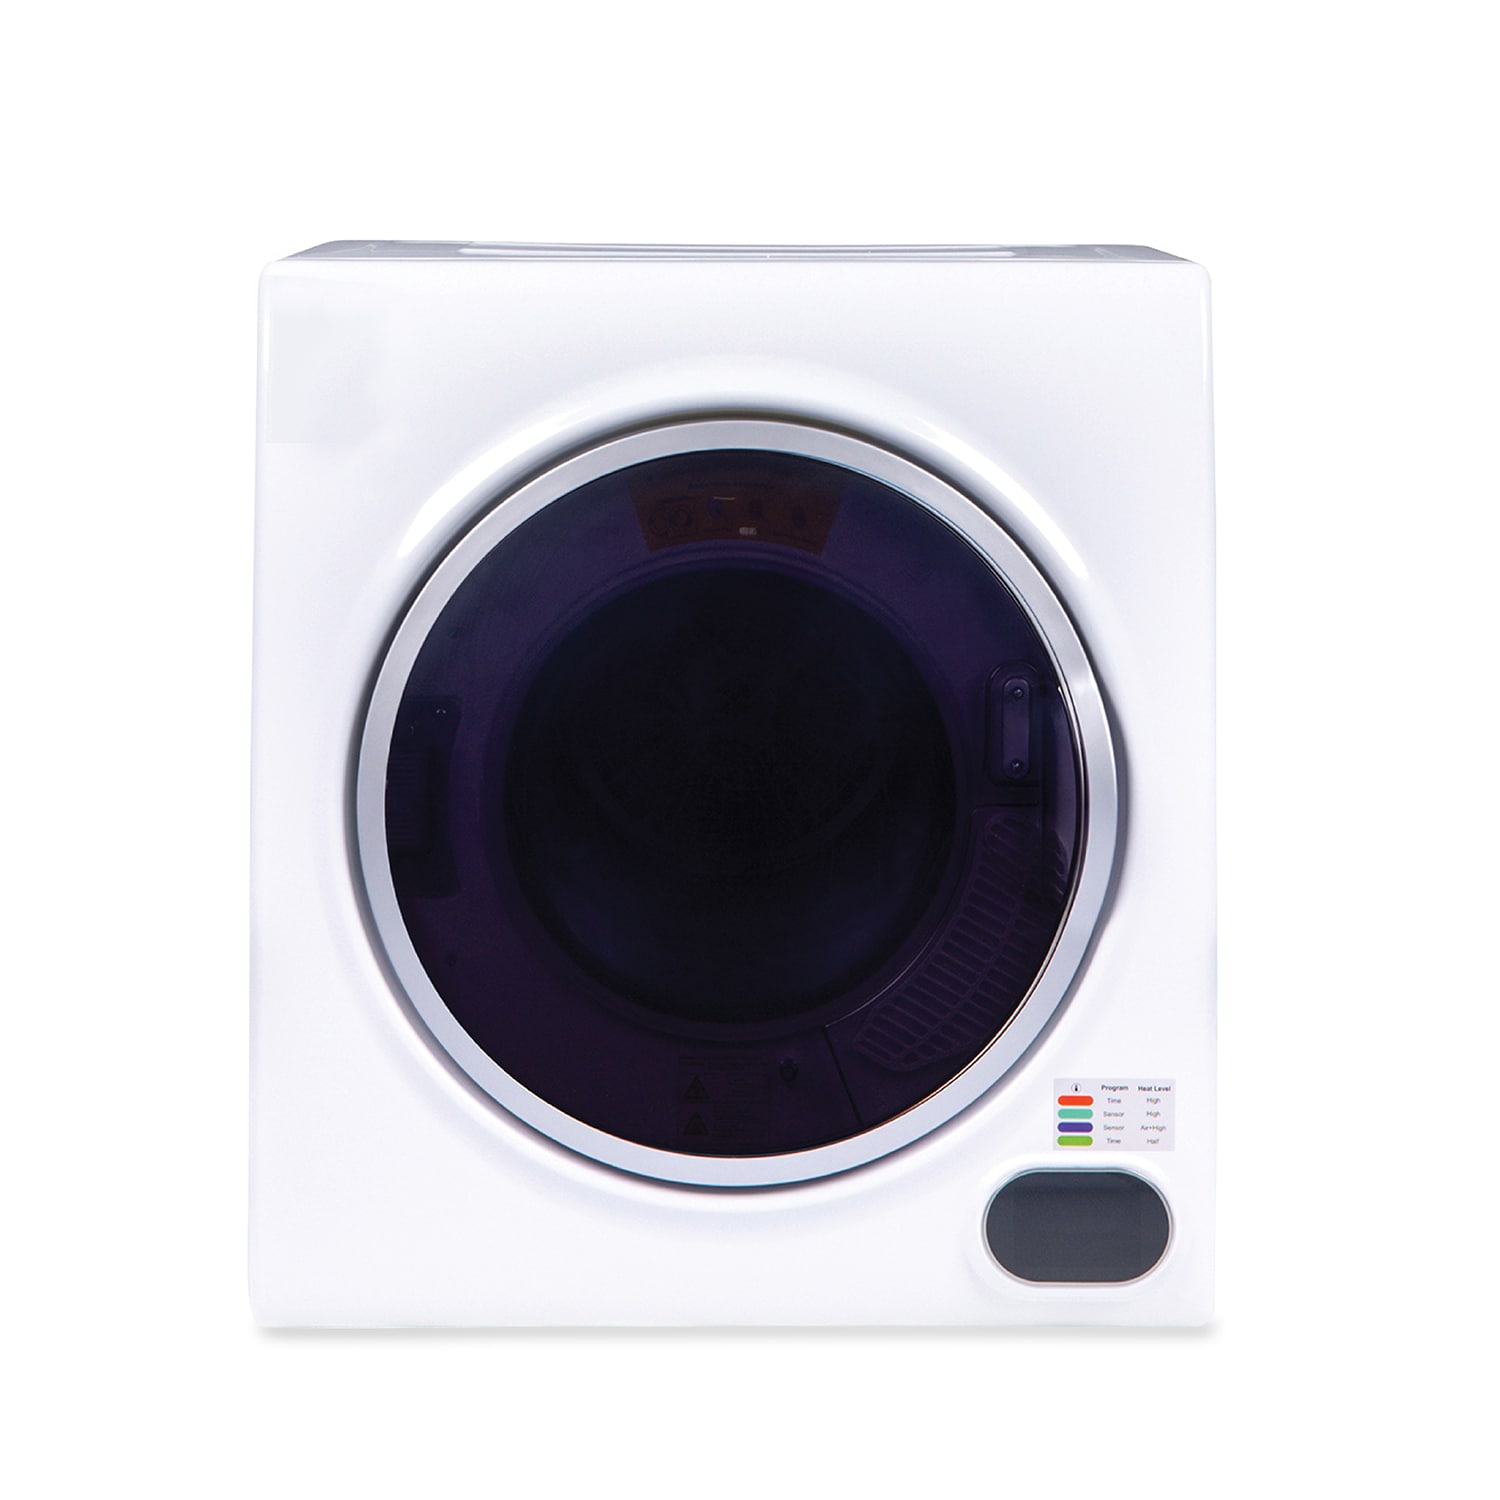 Auertech 1.5 Cu. ft. Electric Stackable Dryer Auertech Color: White